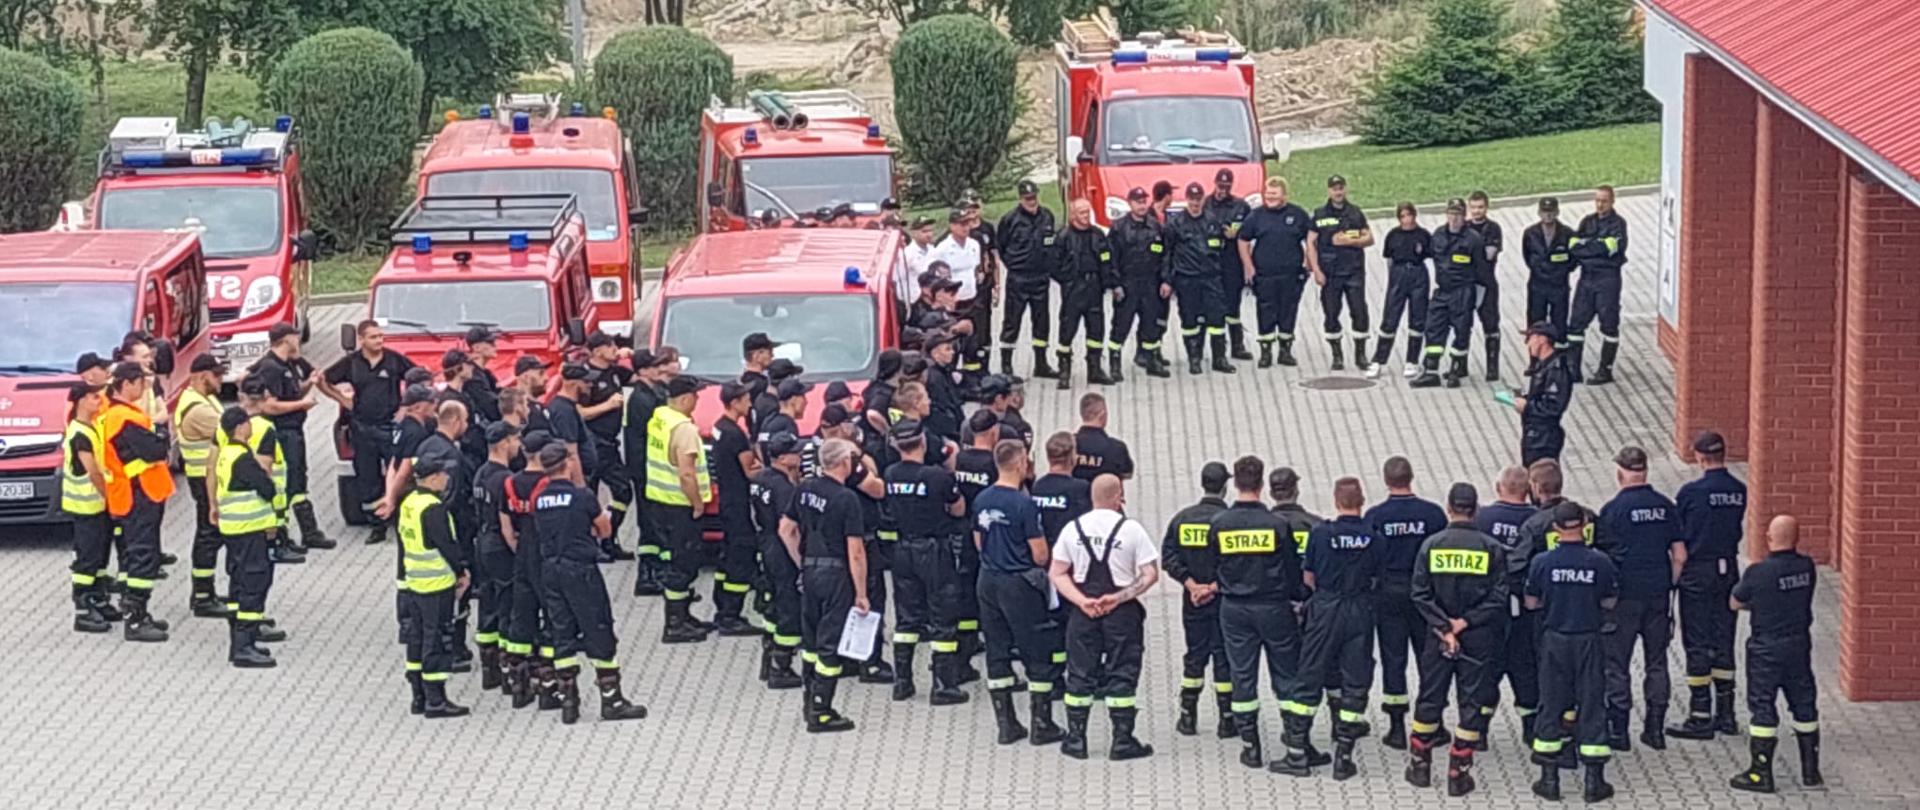 Zdjęcie przedstawia wiele samochodów strażackich i stojących na zbiórce strażaków (około 100 osób). Zdjęcie wykonane na zewnątrz na placu Komendy. 